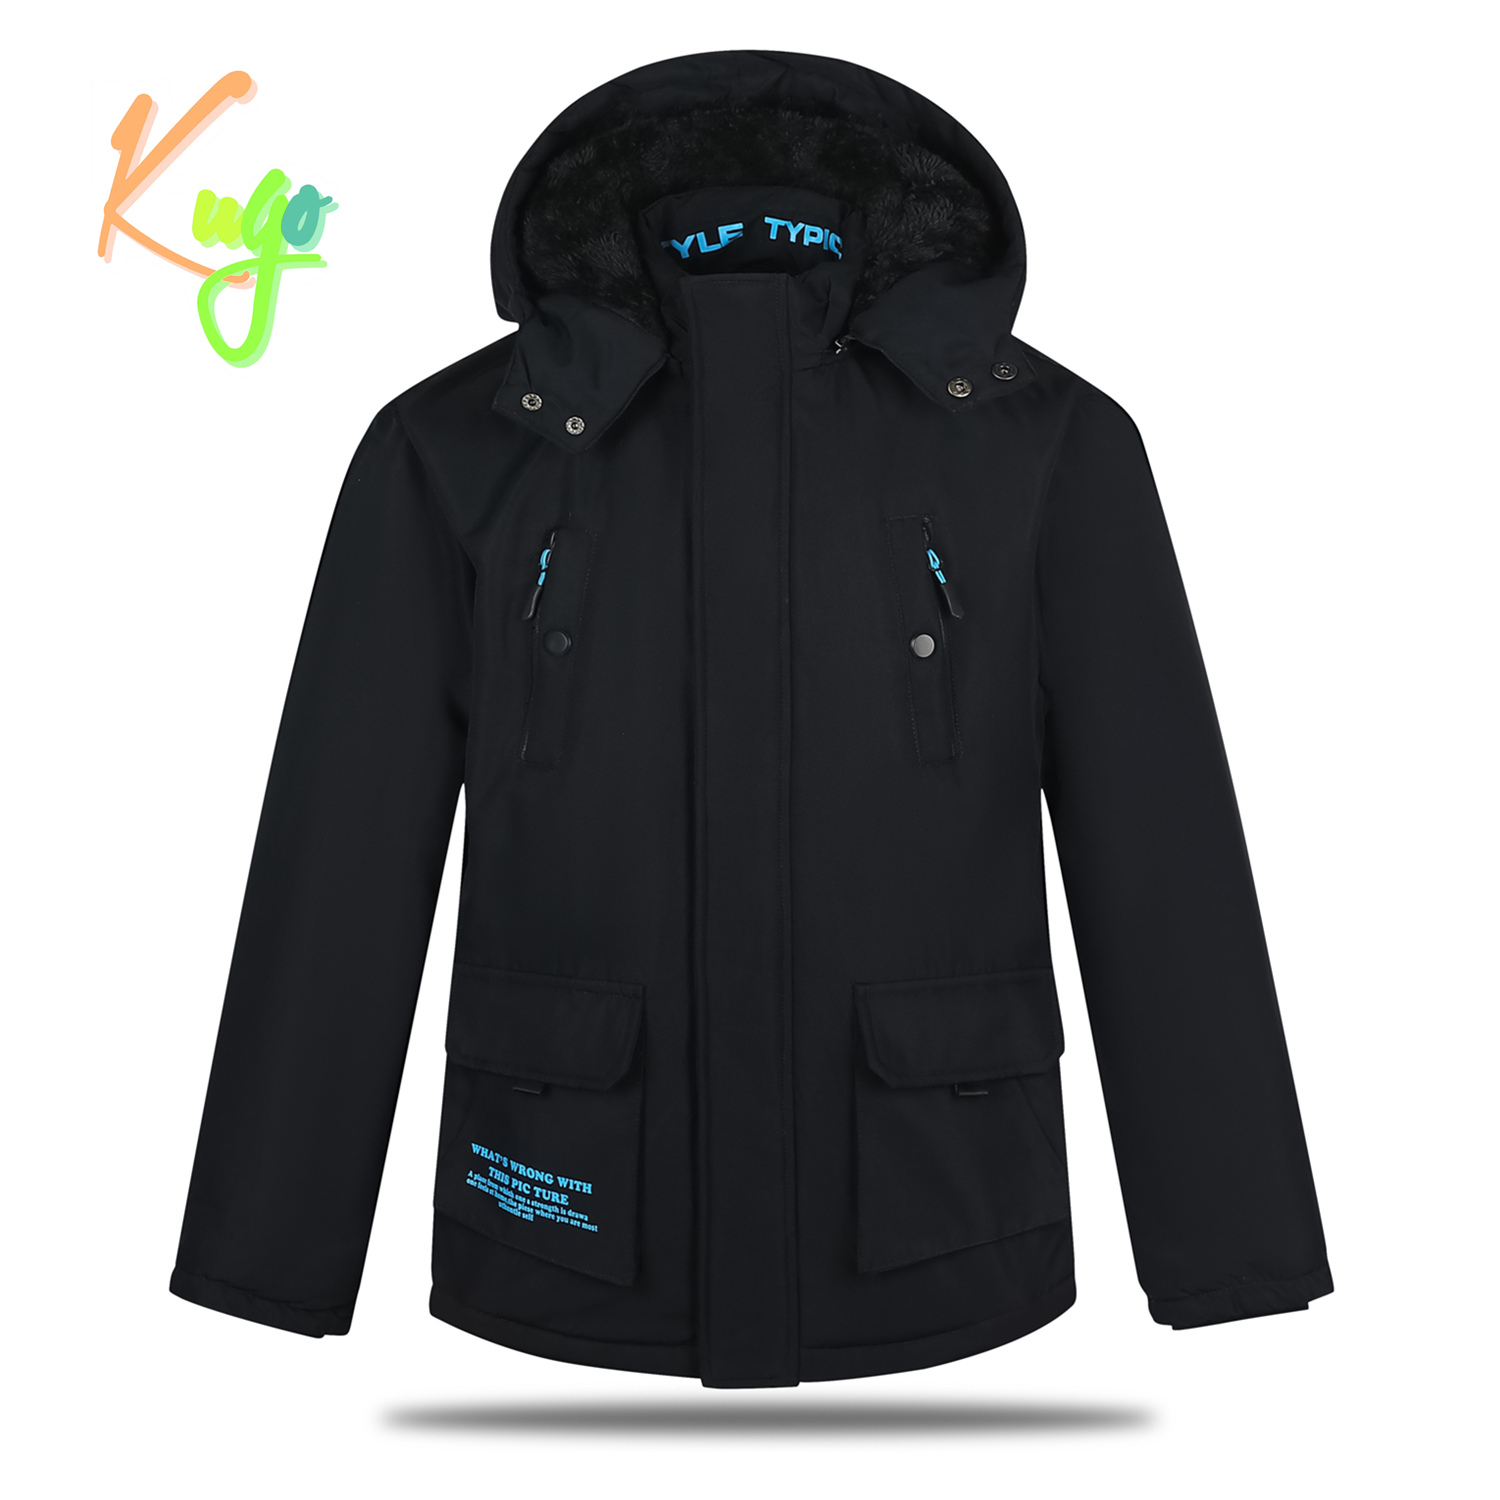 Chlapecká zimní bunda - KUGO BU607, tmavě modrá Barva: Modrá tmavě, Velikost: 152